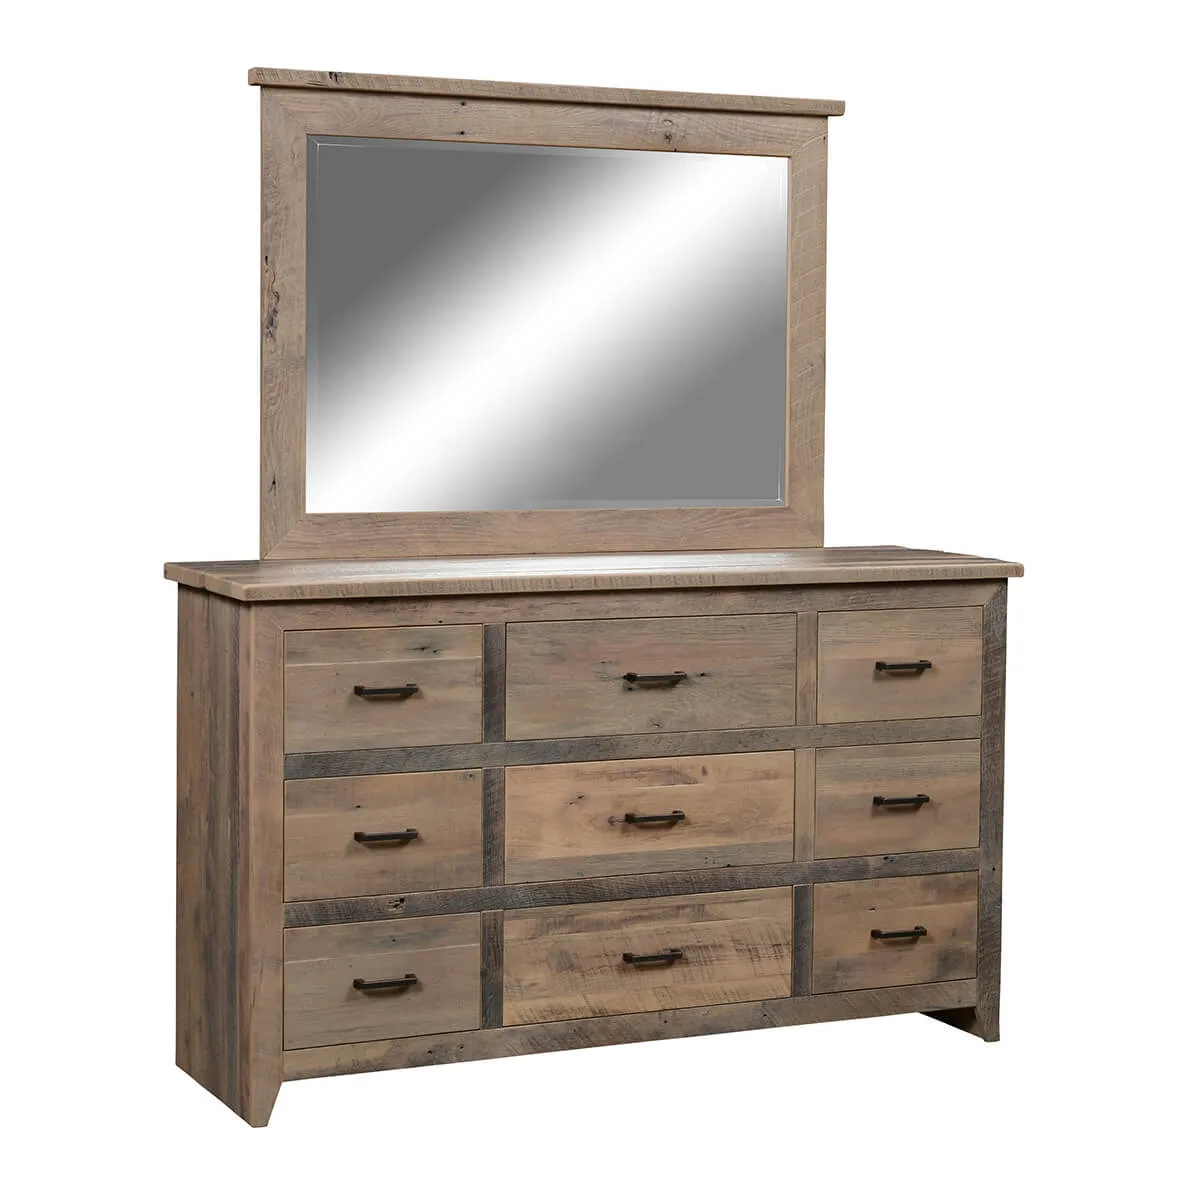 Midland 9-Drawer Dresser with Mirror